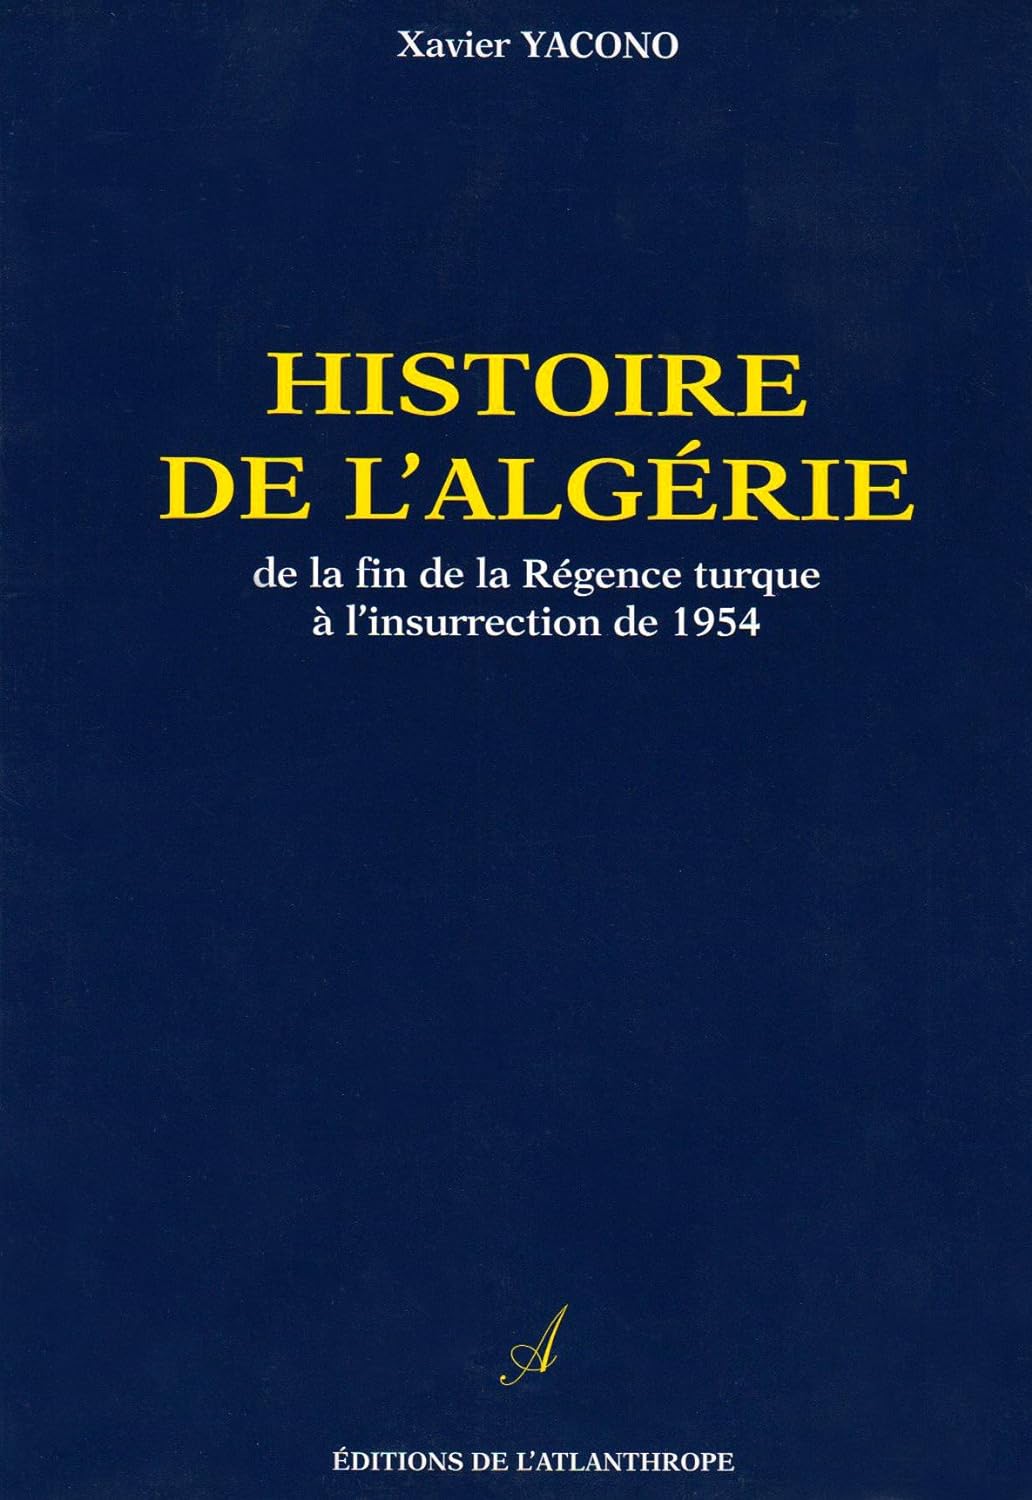 Histoire de l'Algérie... Un livre de transmission massive!